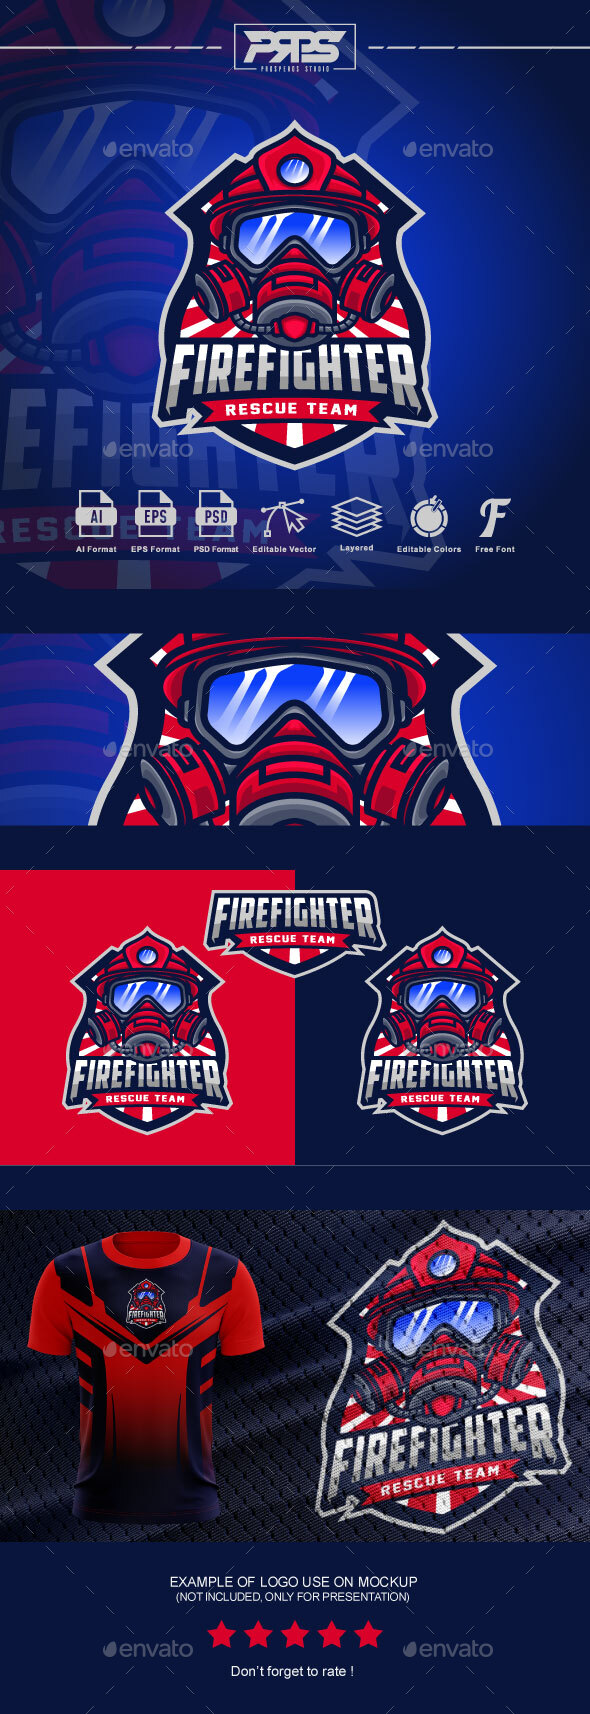 [DOWNLOAD]Firefighter Espot Logo